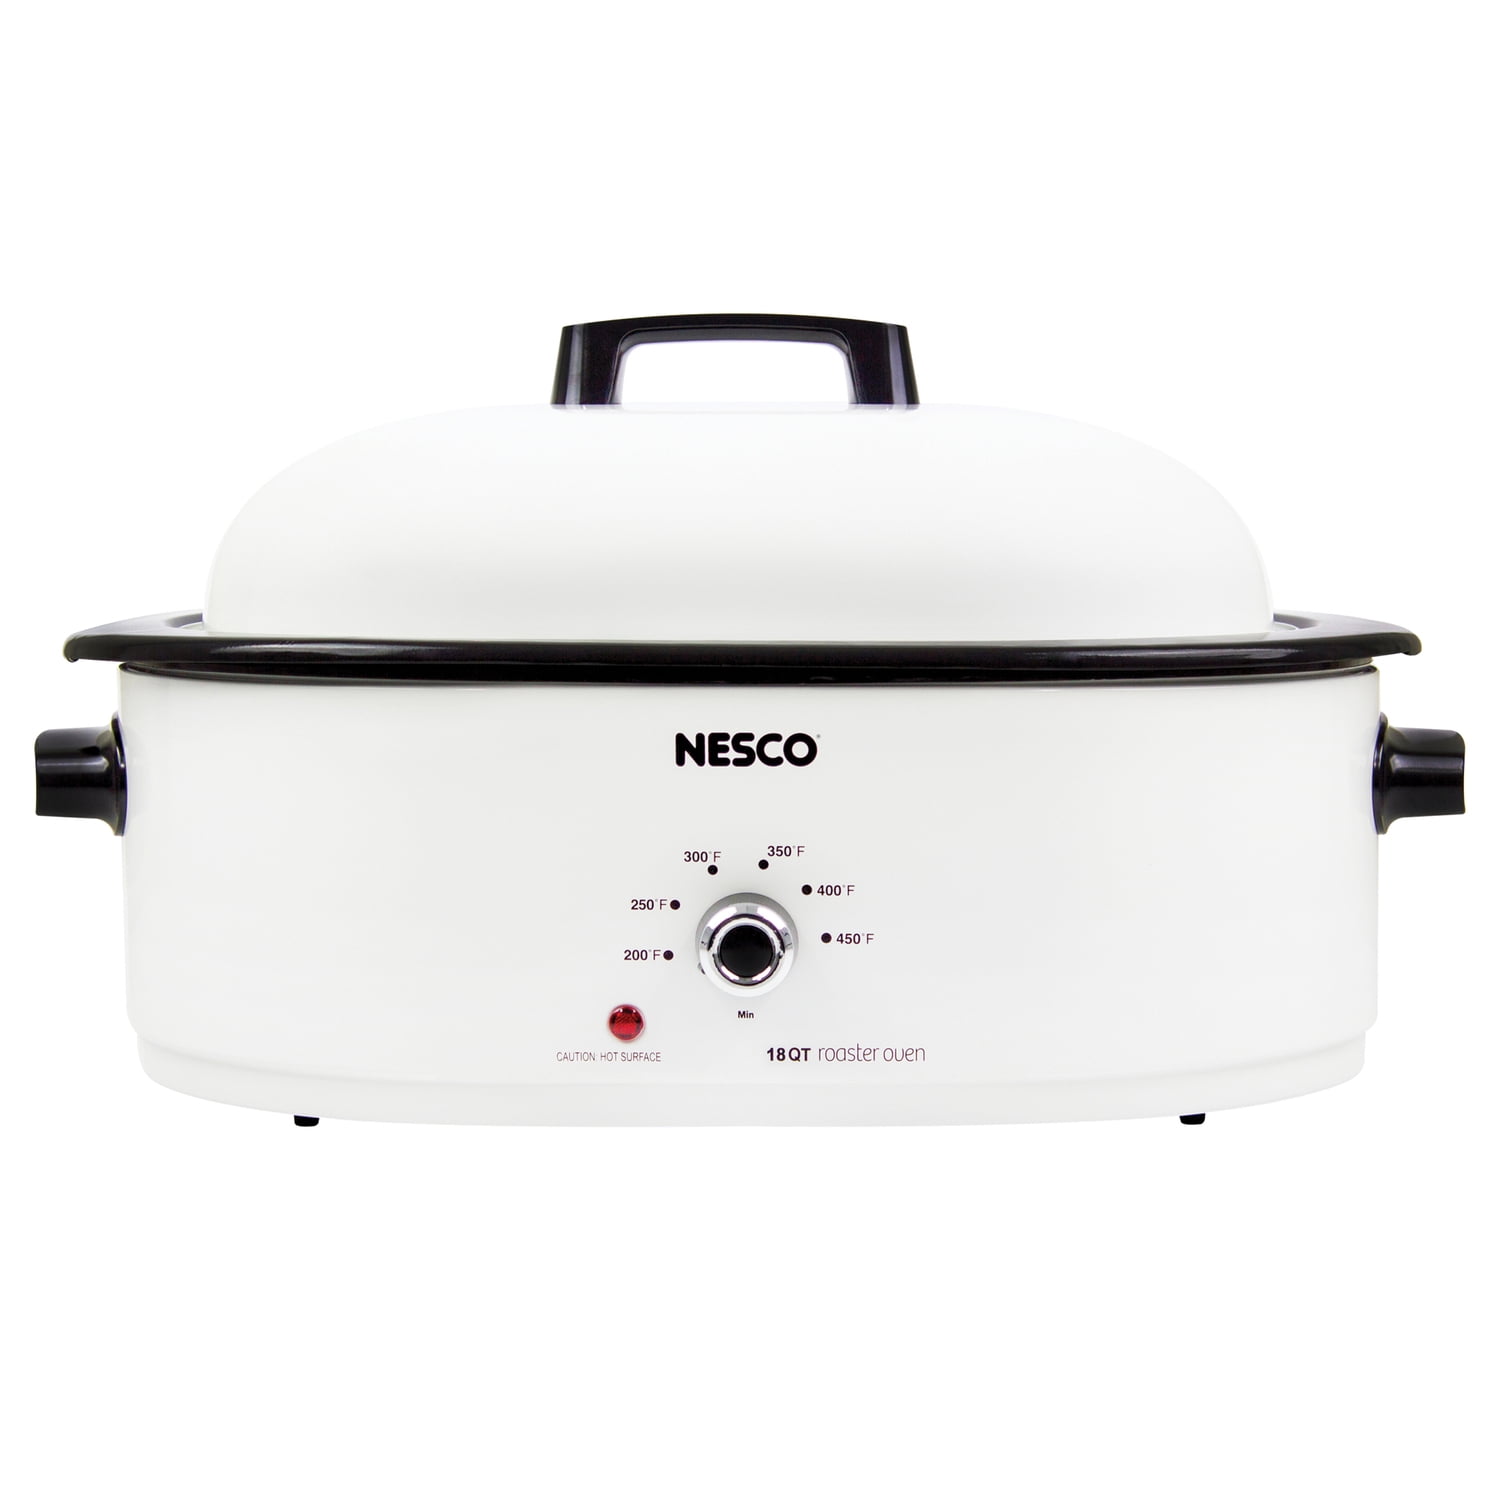 NESCO HUGE 18 QT Slow Cook Roaster Bake Steam Porcelain Crockpot 4208-14  Oven for sale online